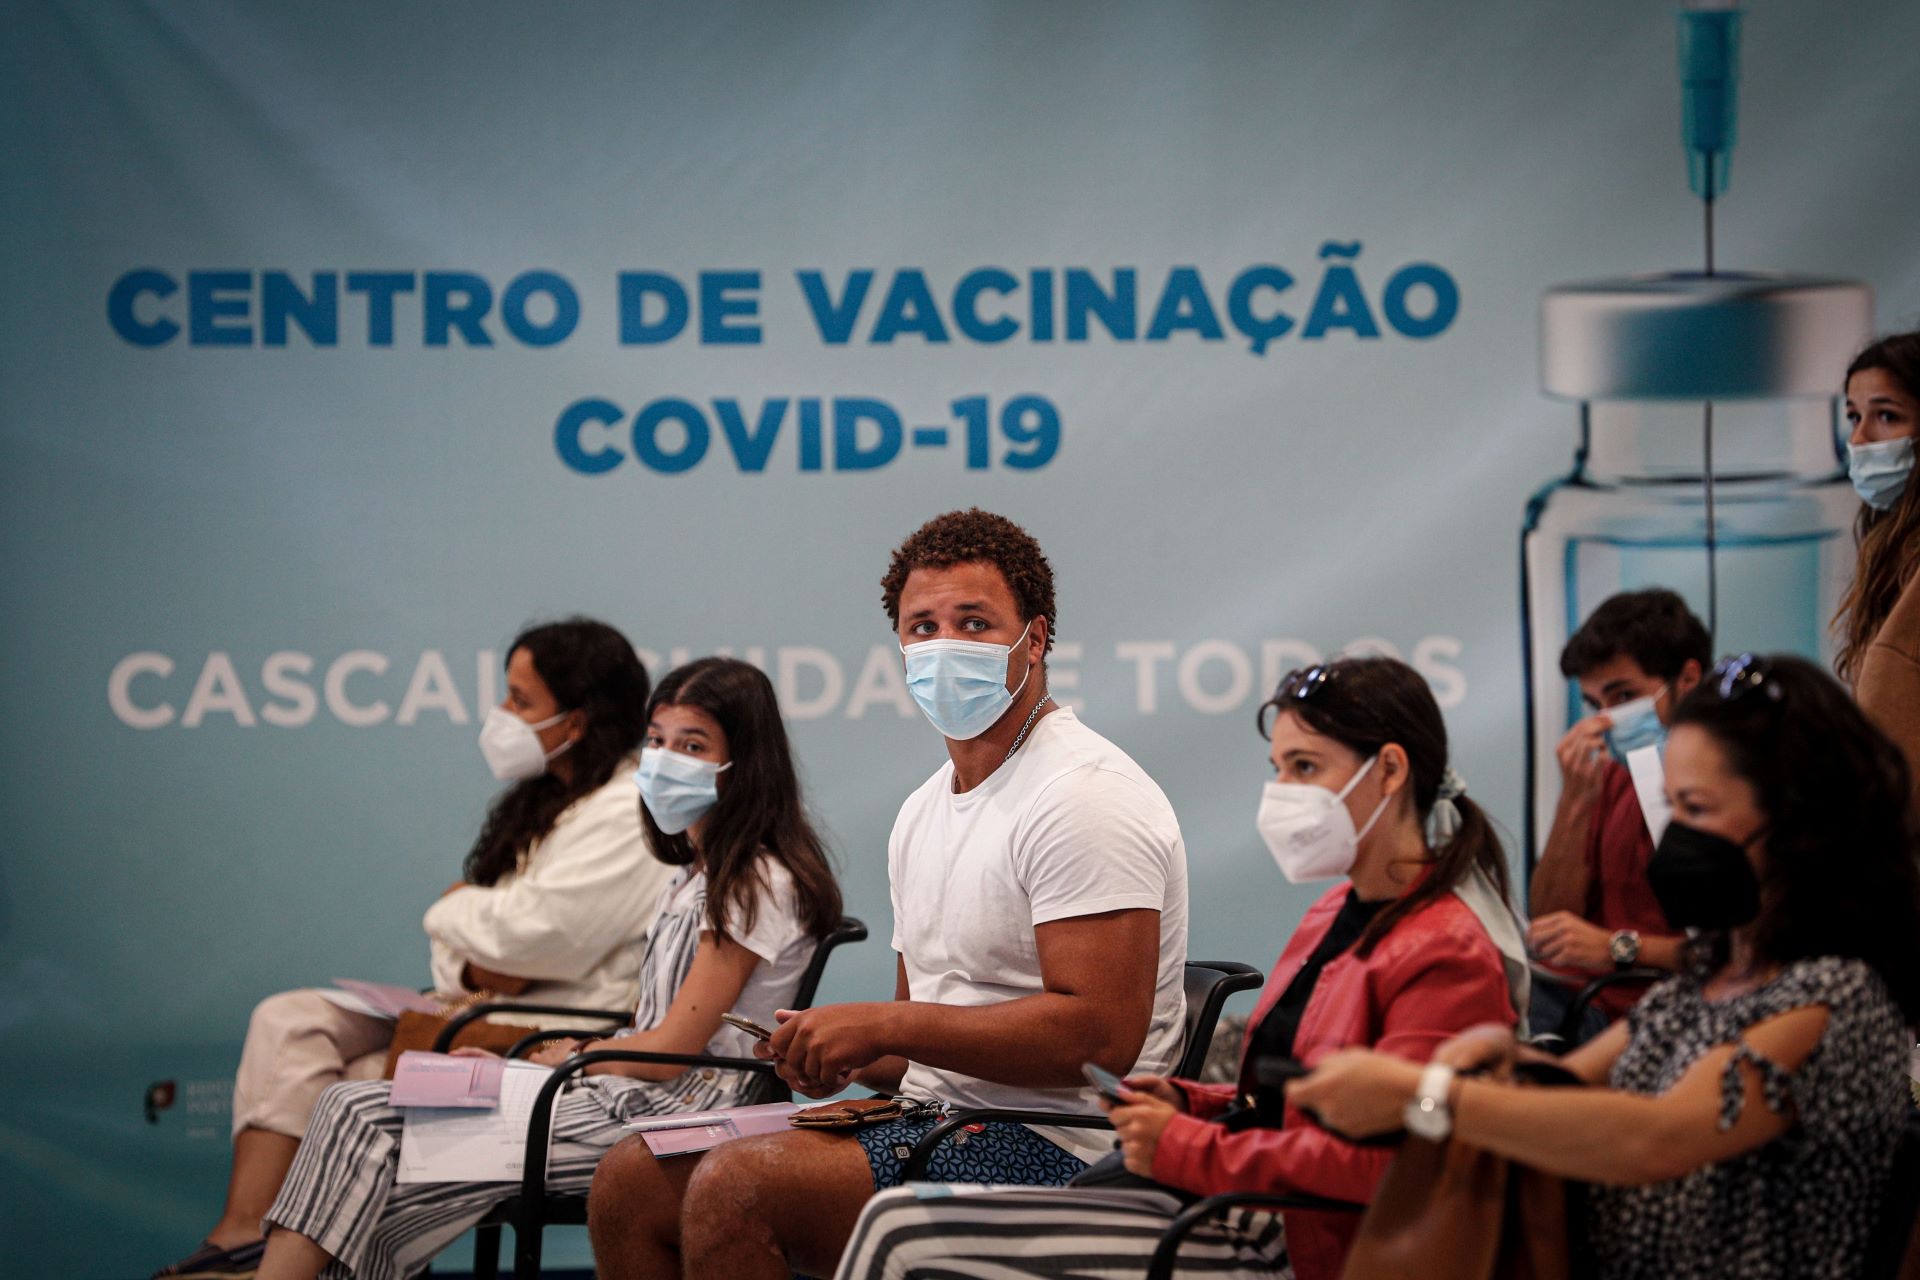 Jovens aguardam para serem vacinados em Cascais, 9/8/2021 (ANTÓNIO COTRIM/LUSA)